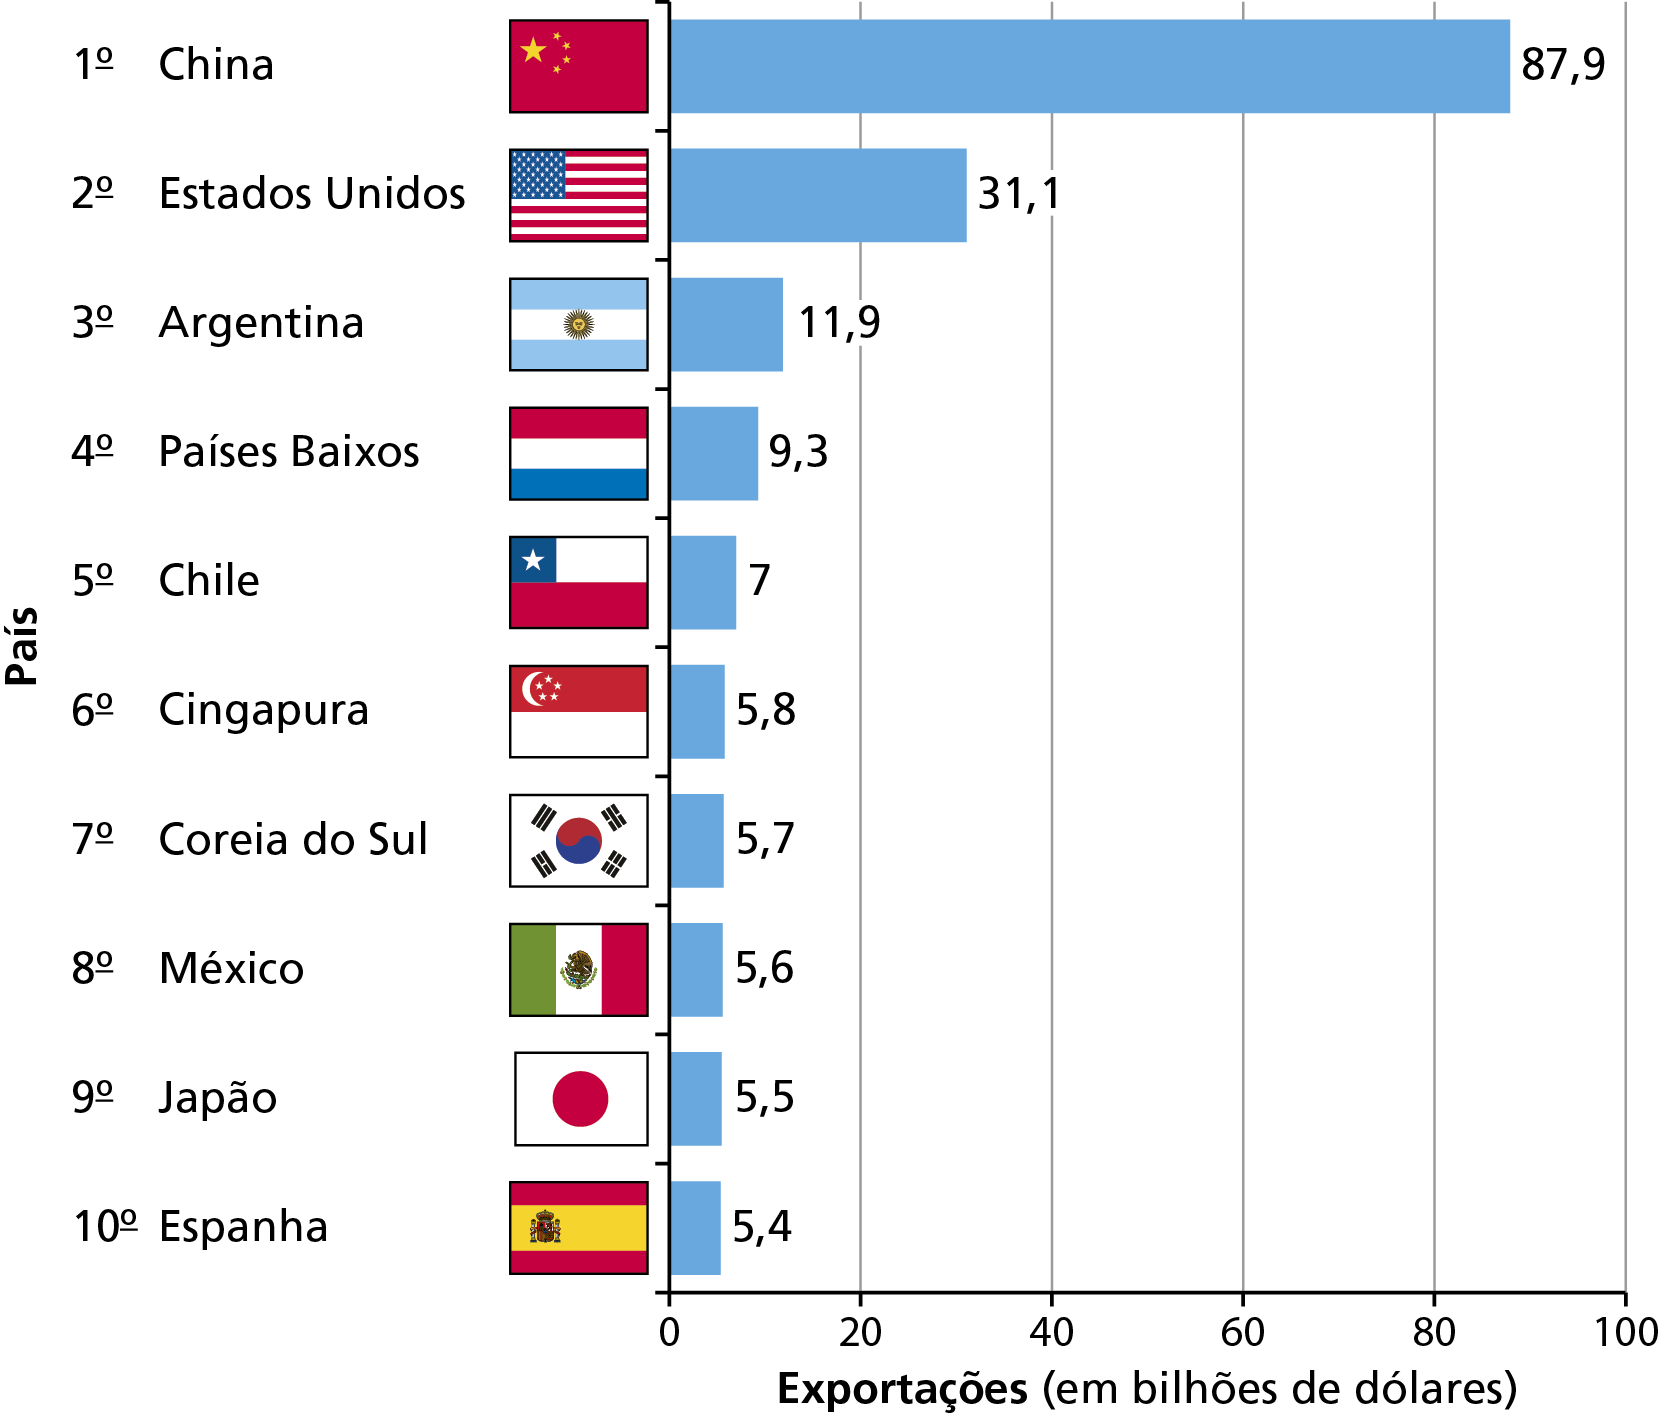 Gráfico. Brasil: principais destinos das exportações (2021). 
Gráfico de barras sobre os principais destinos das exportações brasileiras em 2021. No eixo vertical, os nomes dos países ordenados do primeiro ao décimo, acompanhados de suas respectivas bandeiras; no eixo horizontal, o valor das exportações desses países em bilhões de dólares.
Primeiro: China; 87,9 bilhões de dólares. 
Segundo: Estados Unidos; 31,1 bilhões de dólares. 
Terceiro: Argentina; 11,9 bilhões de dólares. 
Quarto: Países Baixos; 9,3 bilhões de dólares. 
Quinto: Chile; 7 bilhões de dólares. 
Sexto: Cingapura; 5,8 bilhões de dólares. 
Sétimo: Coreia do Sul; 5,7 bilhões de dólares. 
Oitavo: México; 5,6 bilhões de dólares. 
Nono: Japão; 5,5 bilhões de dólares. 
Décimo: Espanha; 5,4 bilhões de dólares.